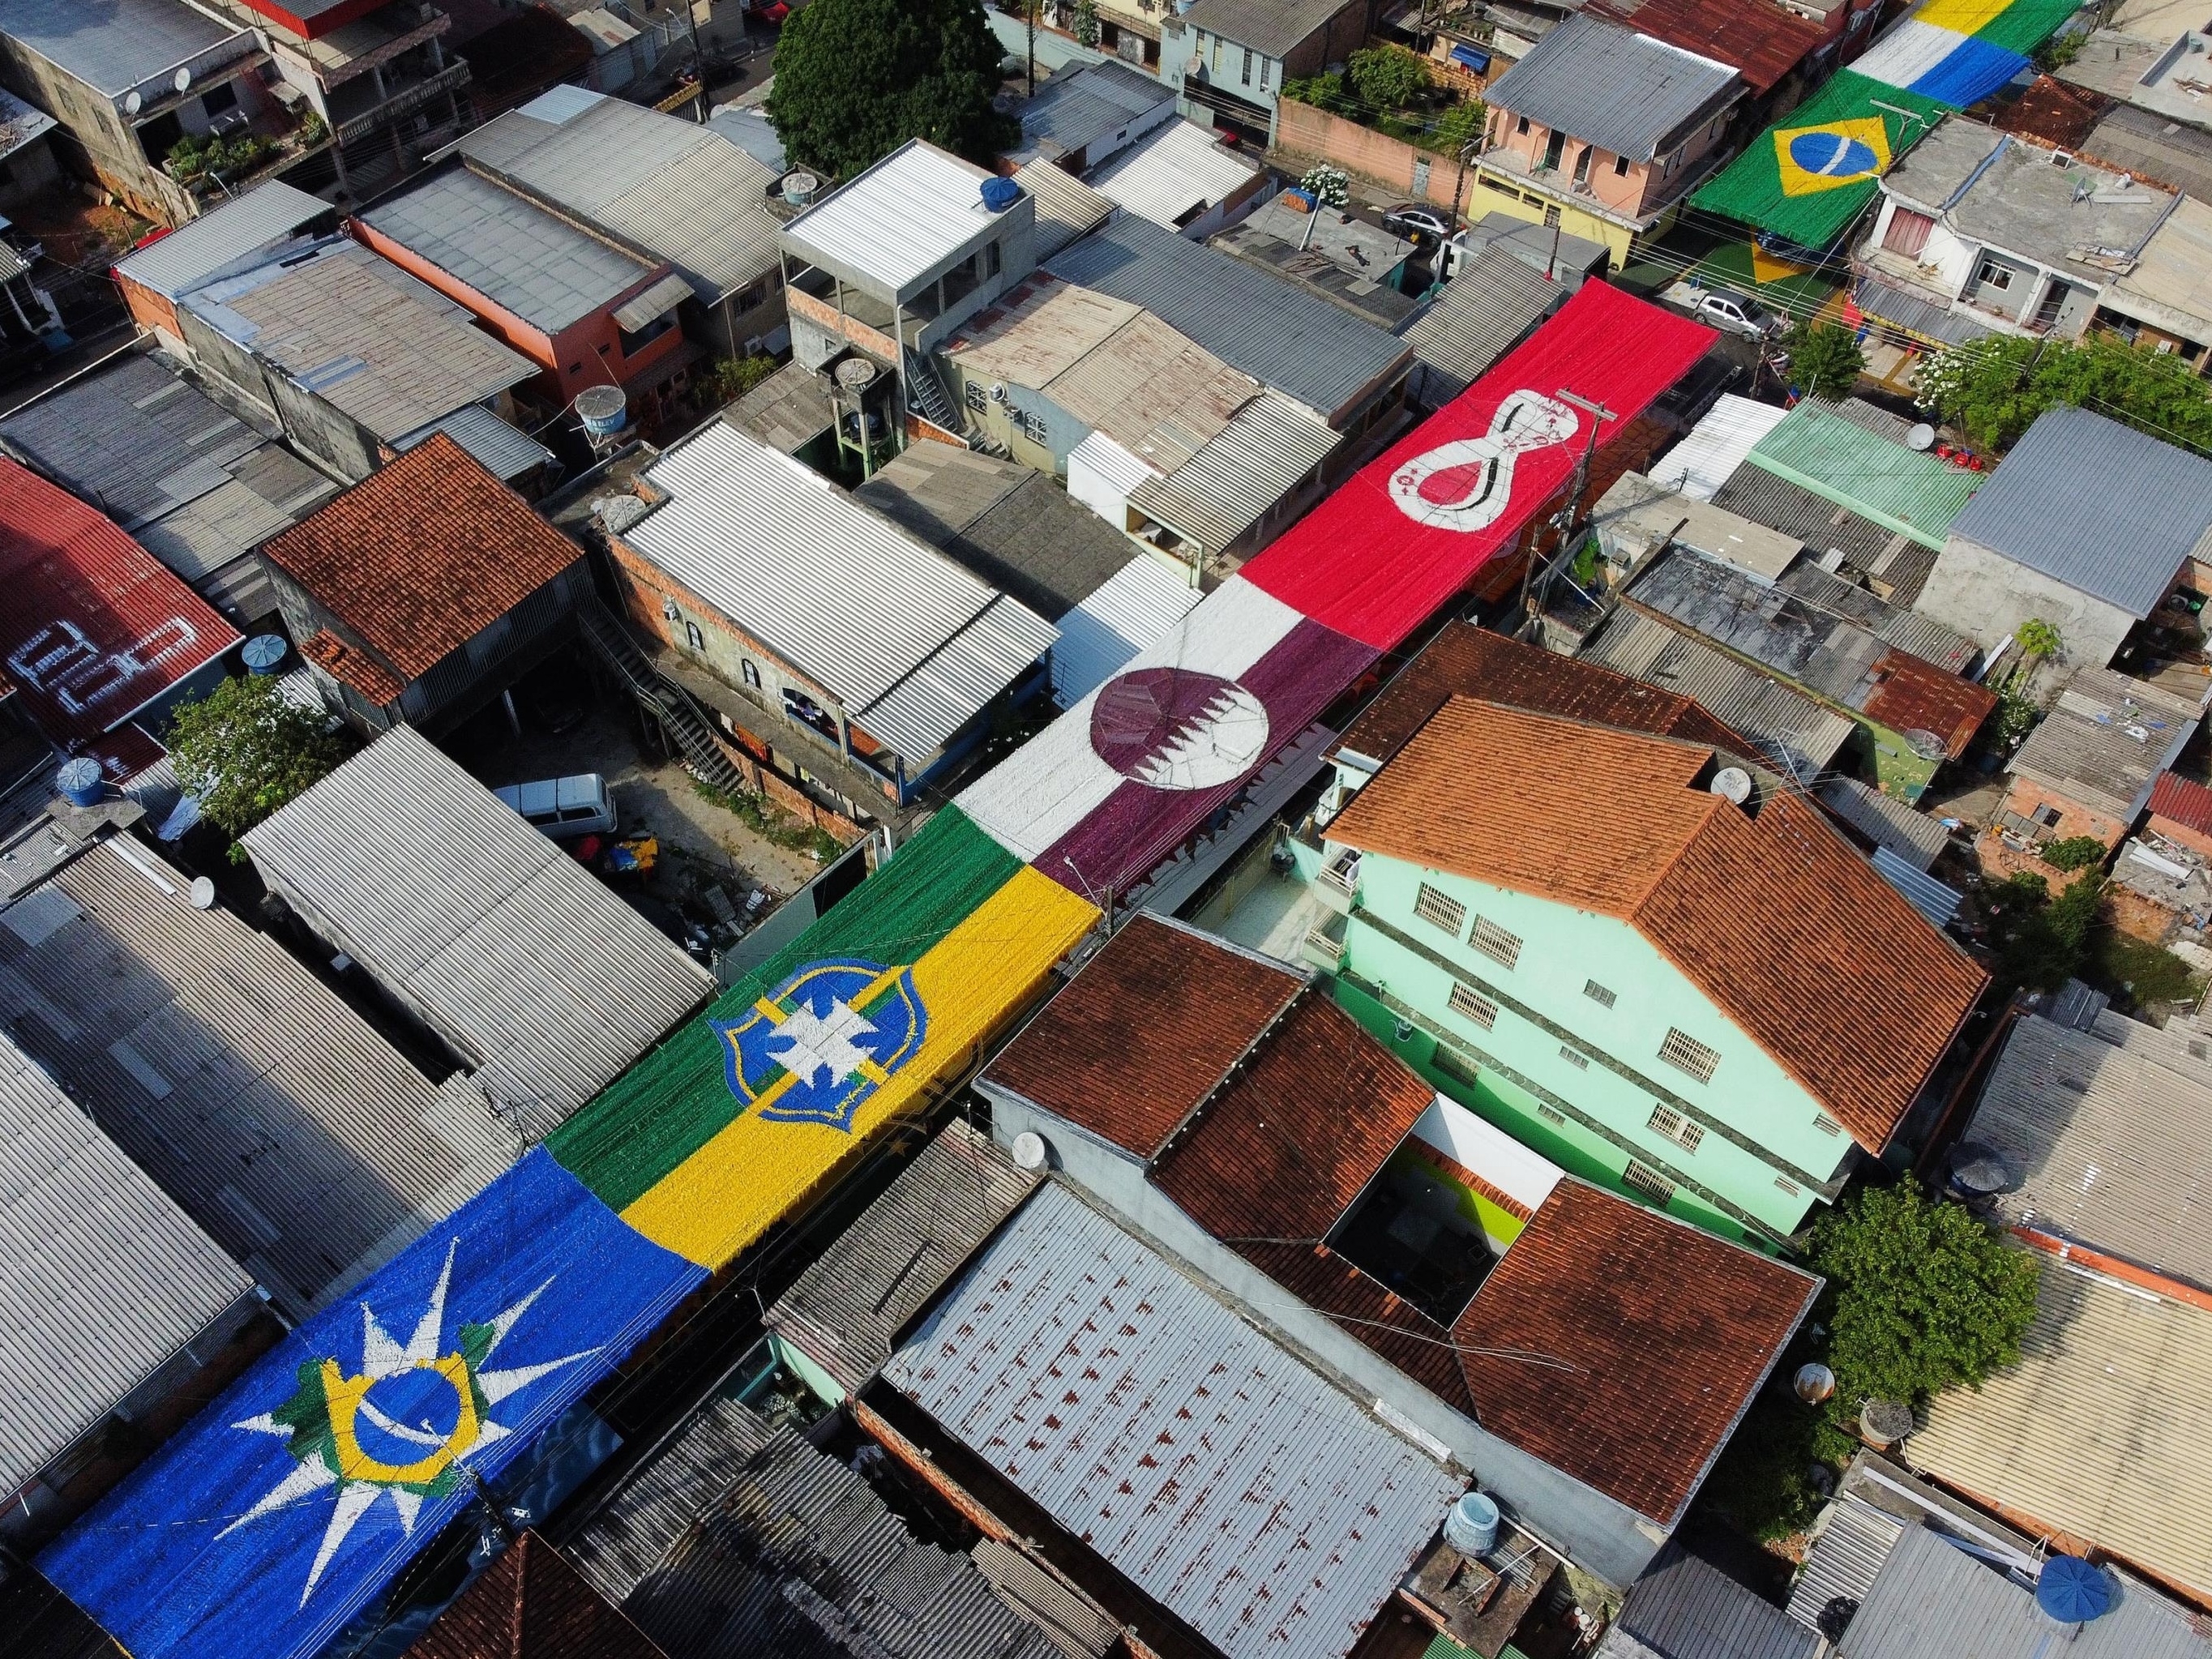 Trânsito Manaus - Quiz de perguntas e respostas hoje no stories do